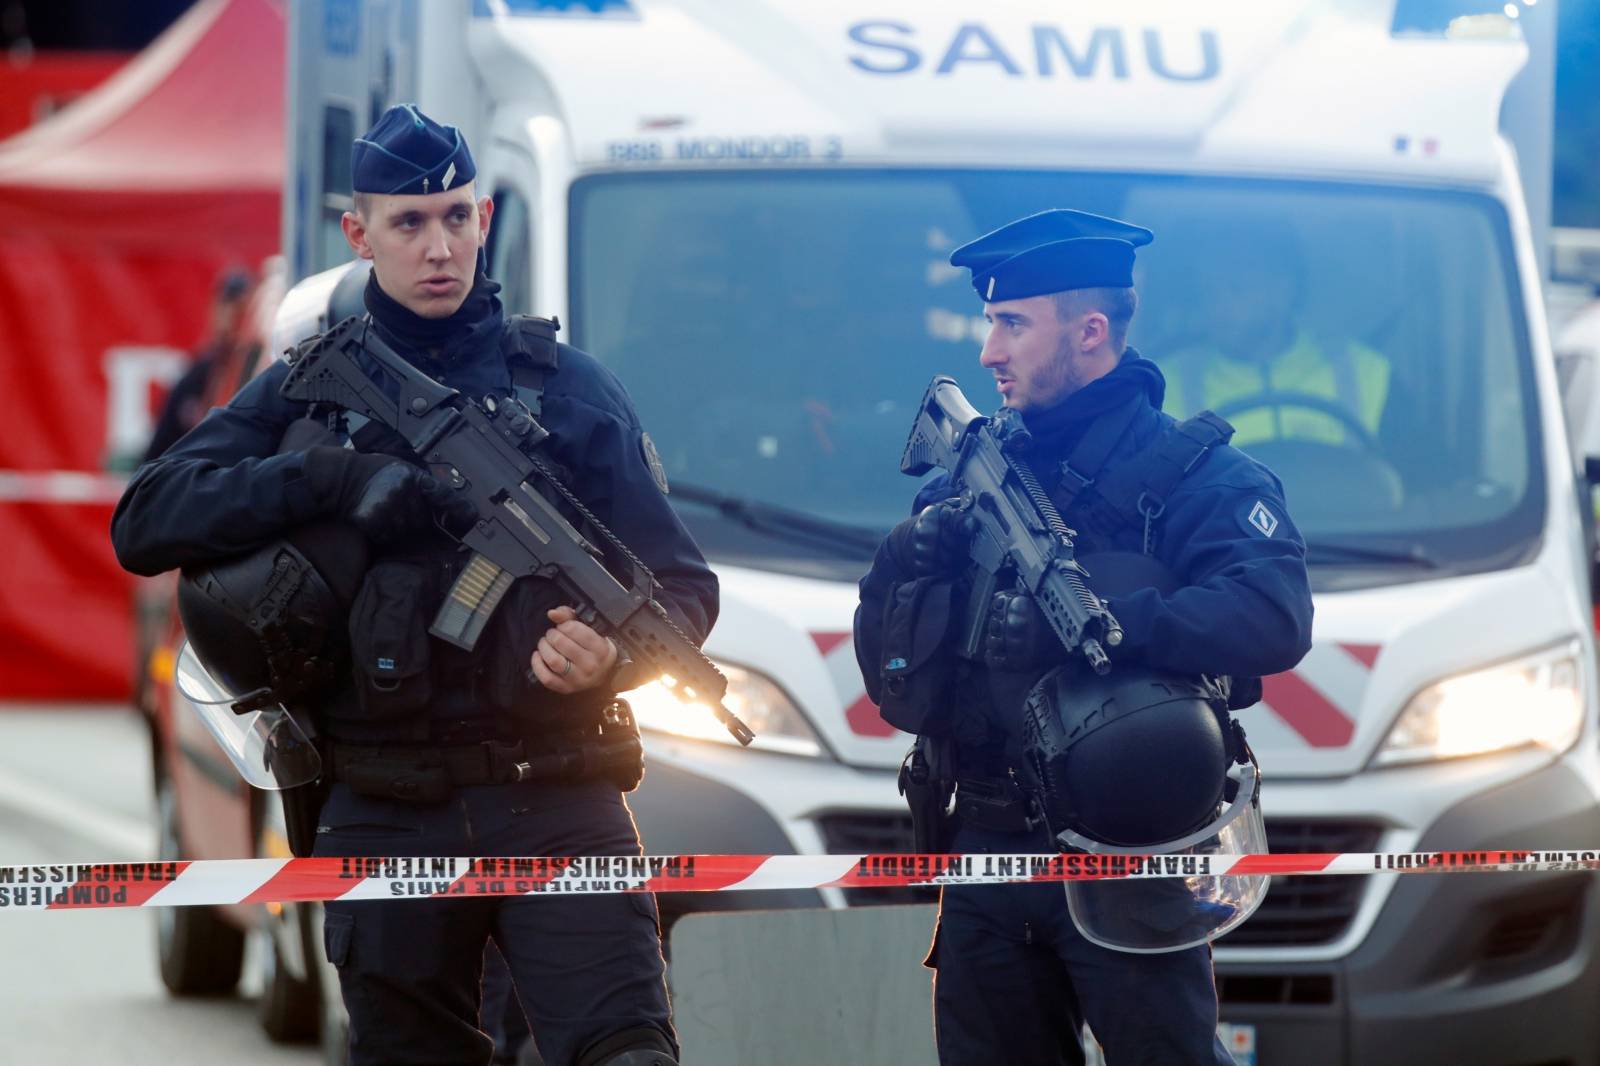 Stravični napad u Francuskoj: Ranio sedam i ubio dvoje ljudi